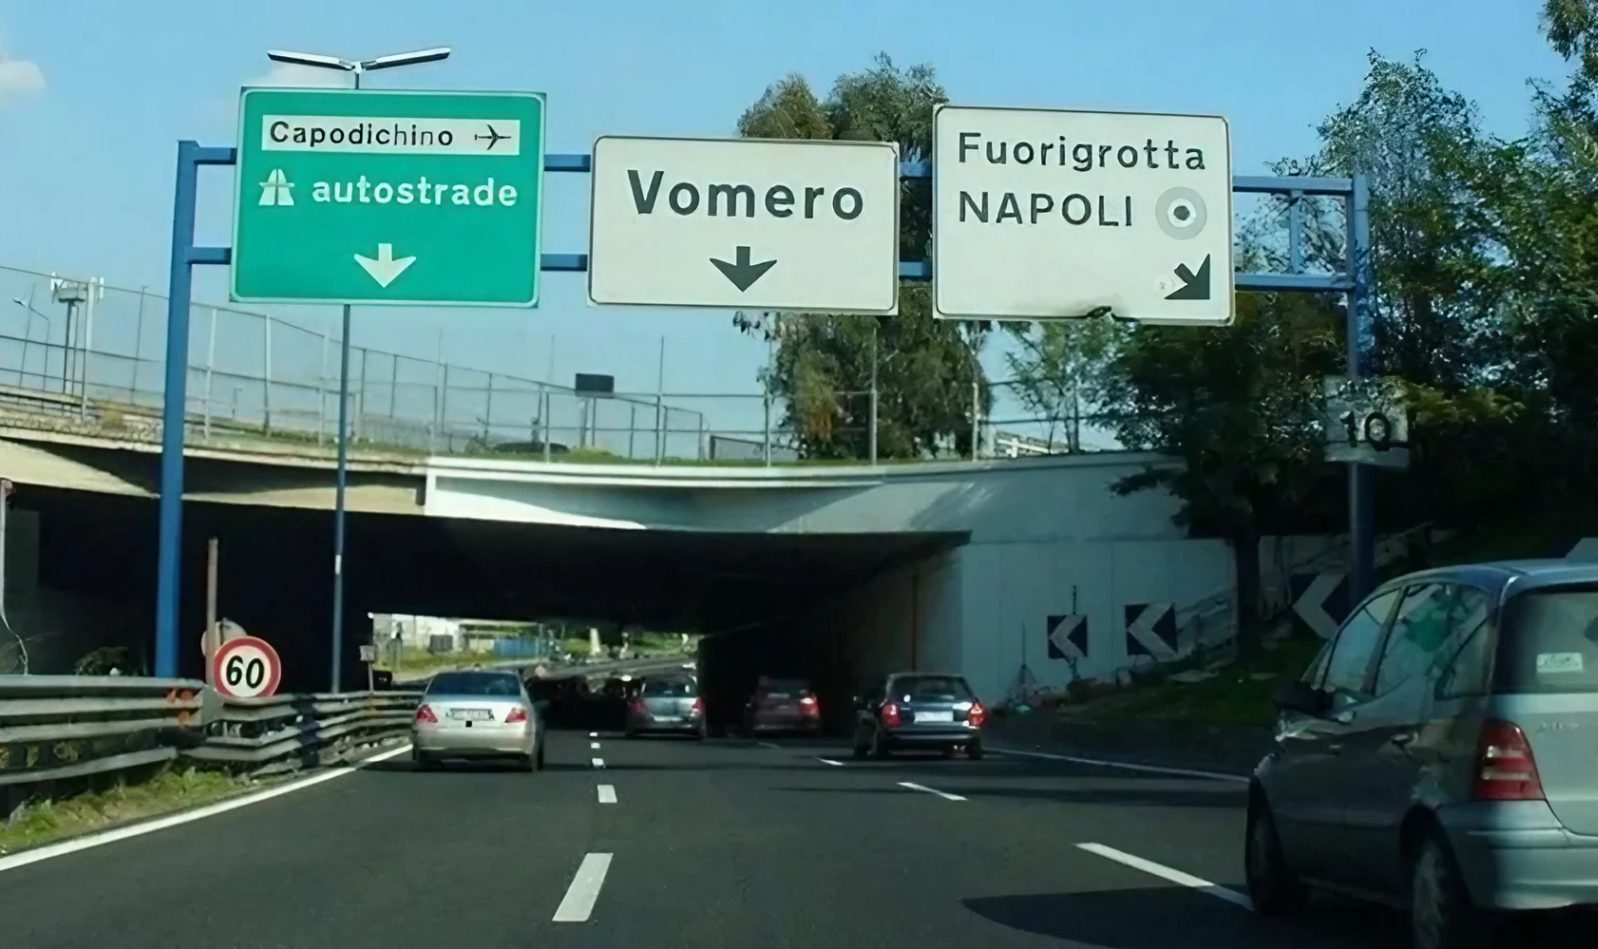 Naples ring road, Vomero Fuorigrotta exit